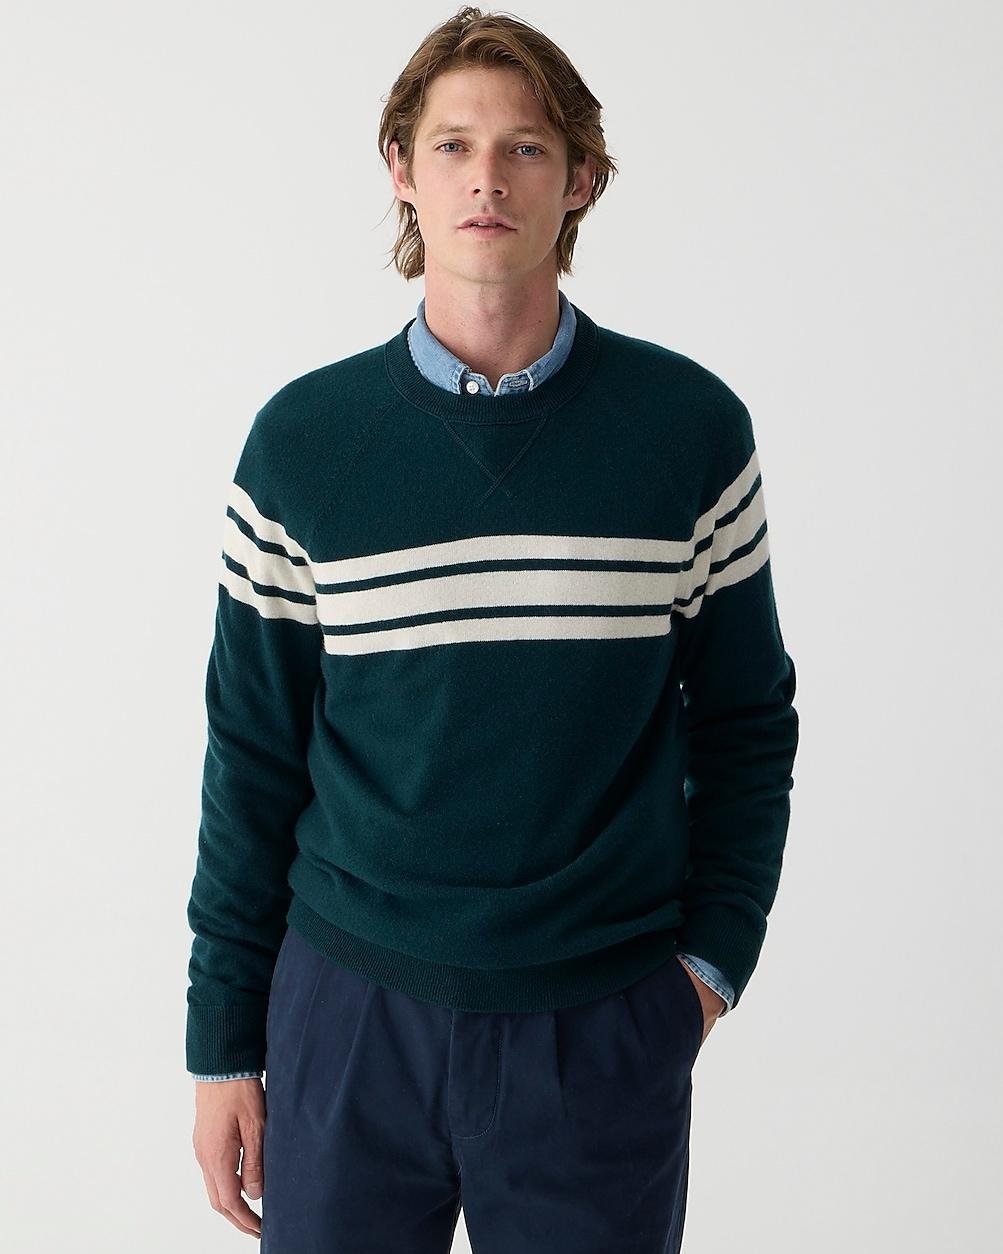 Cashmere sweatshirt in marine stripe by J.CREW